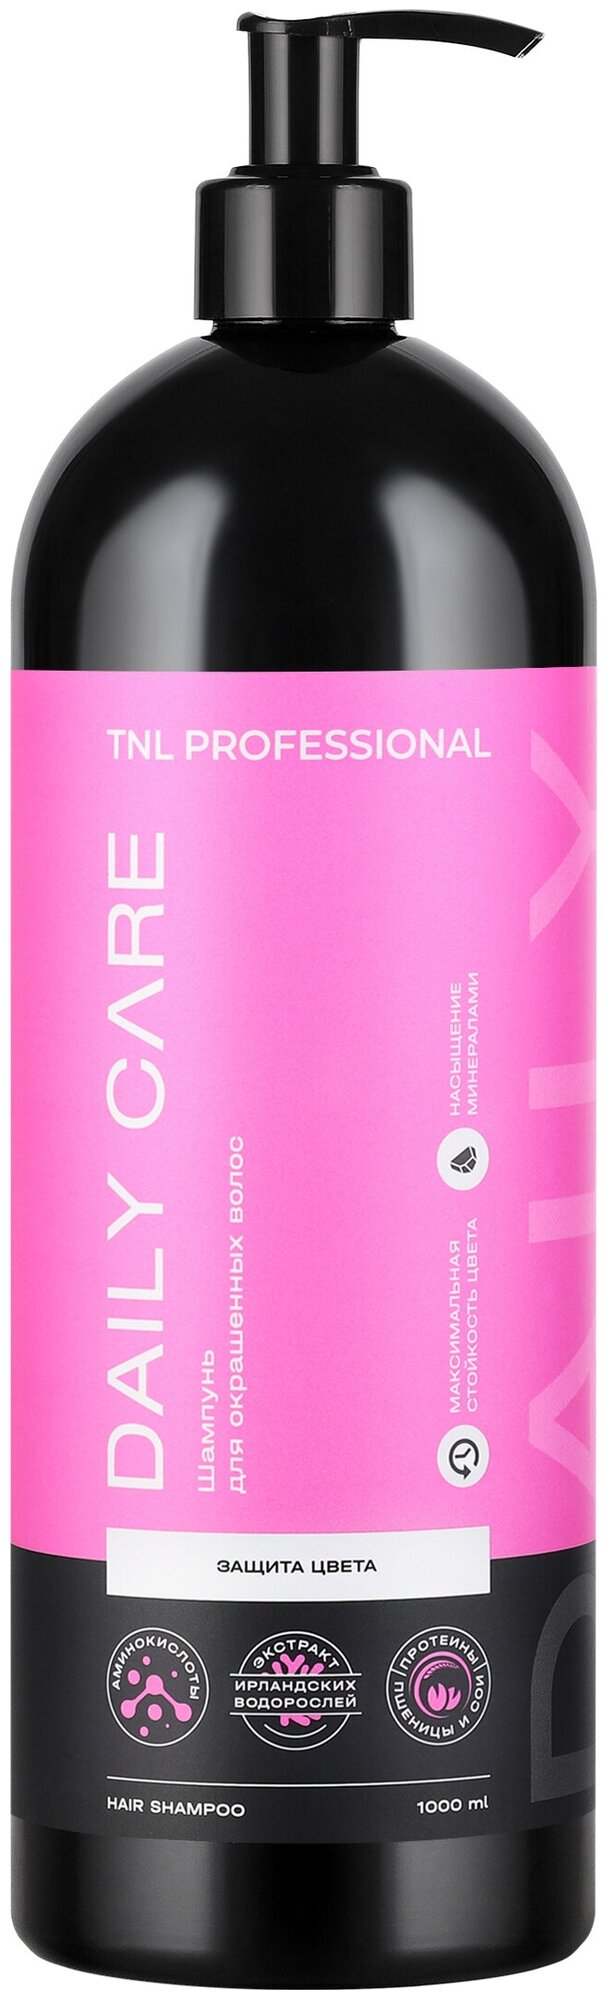 Шампунь TNL Professional защиты цвета окрашенных волос Daily Care, 1000мл